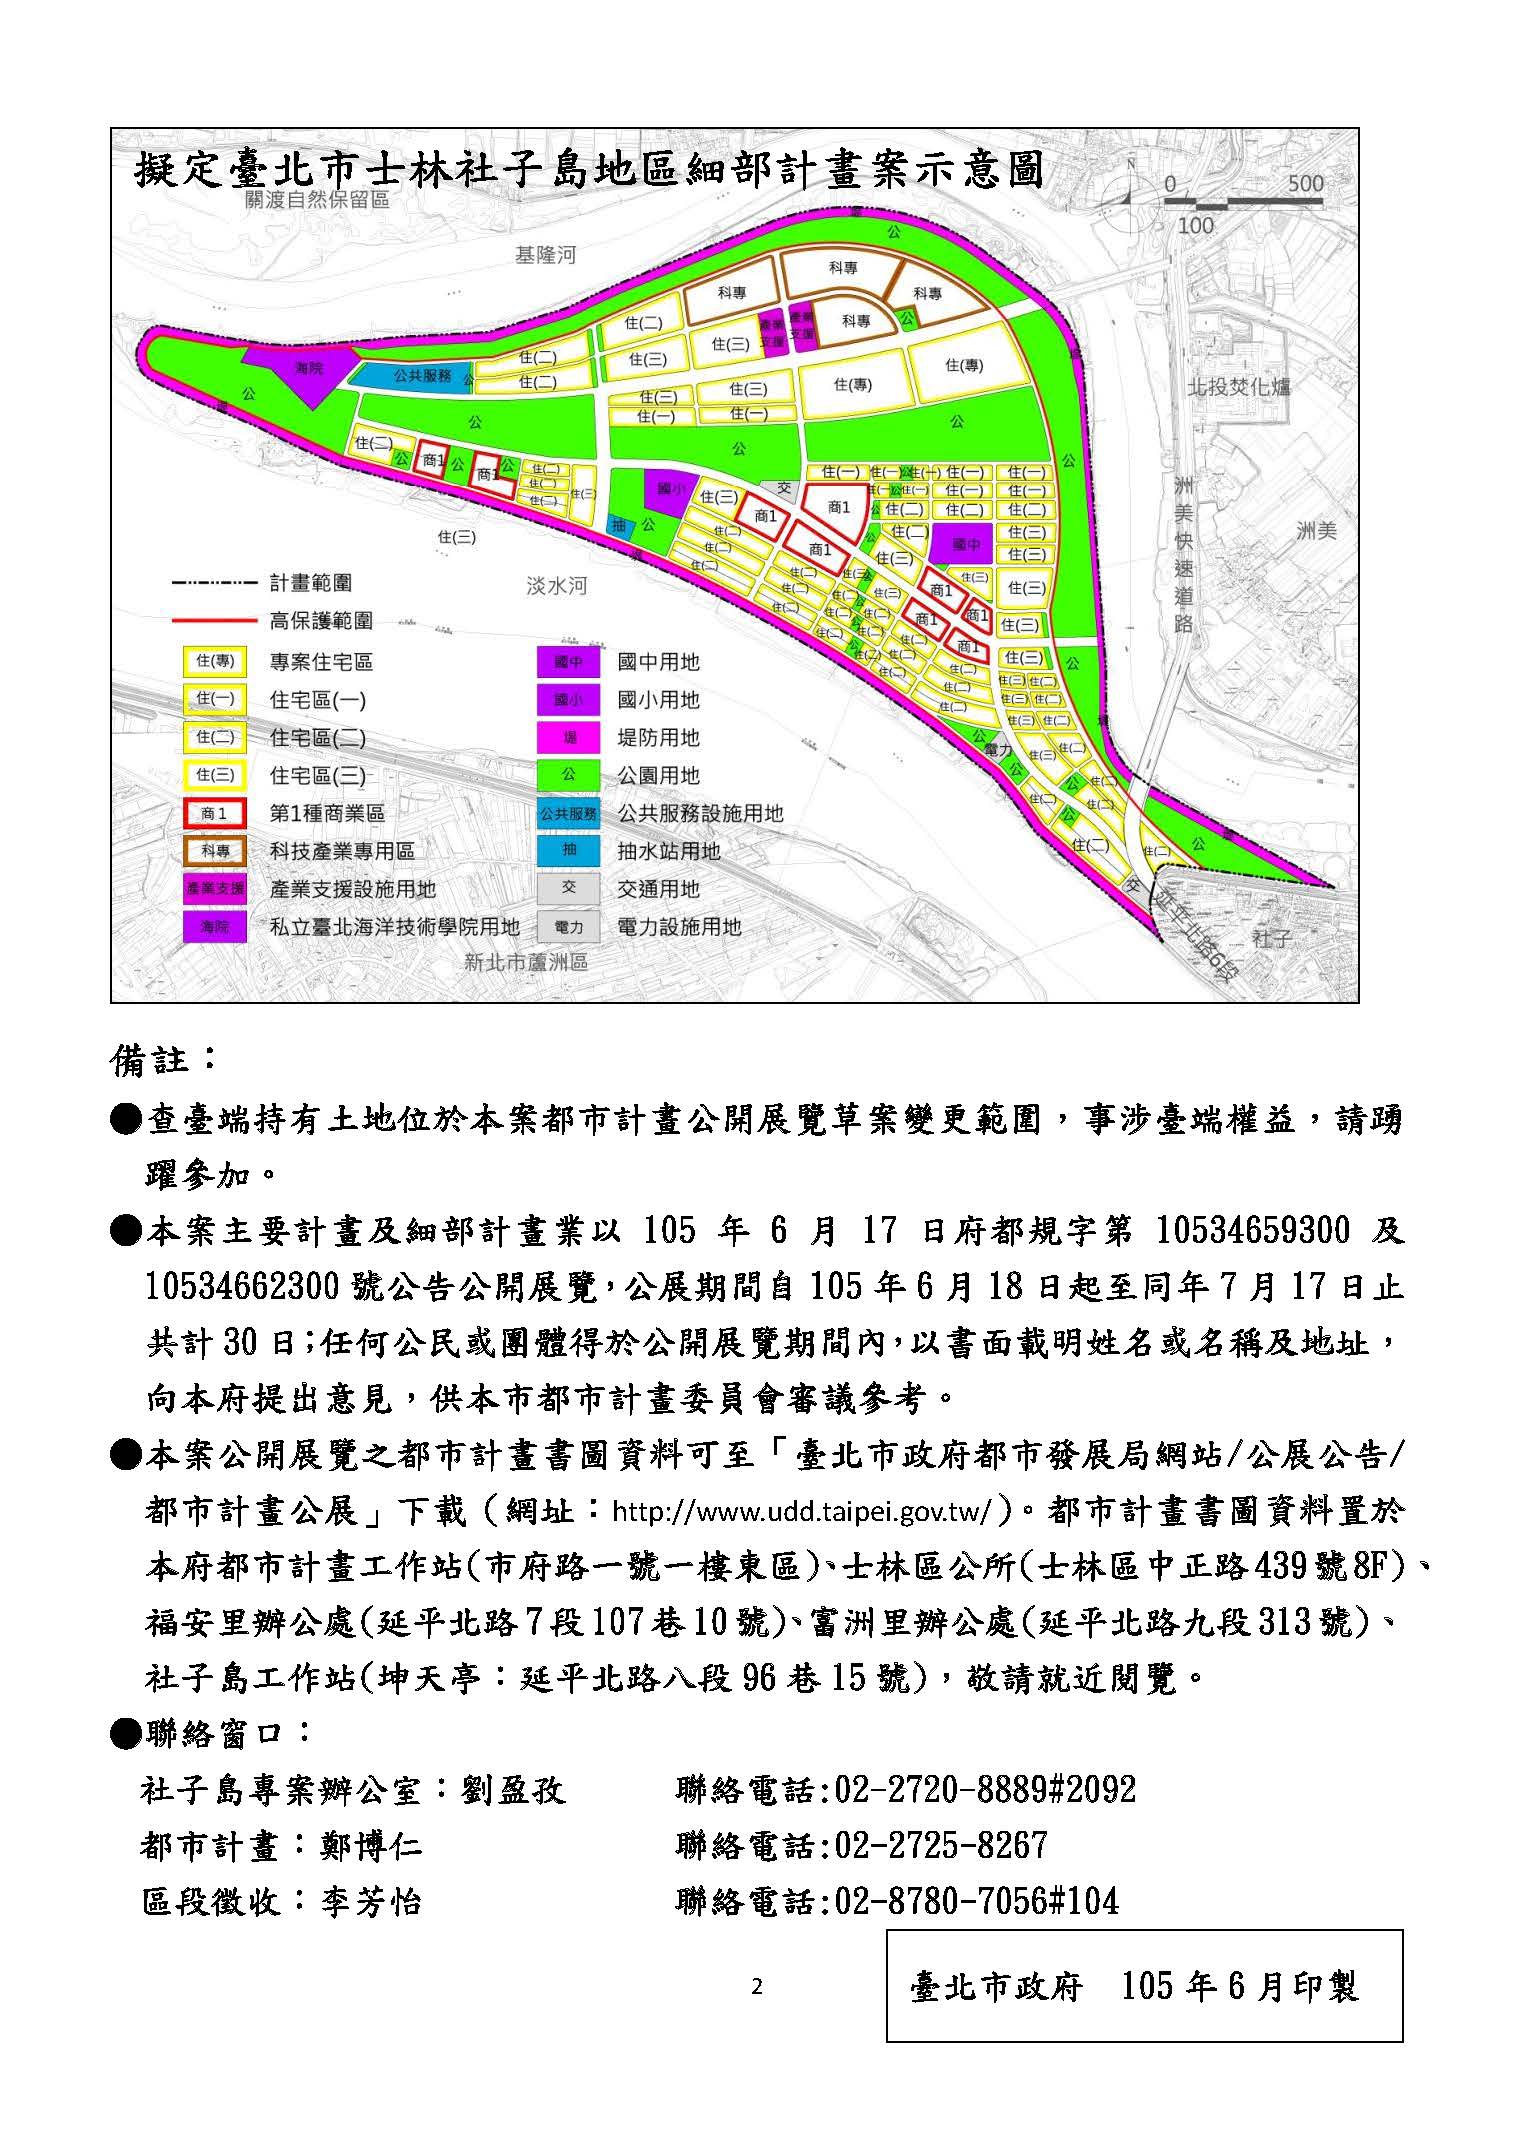 擬定臺北市士林社子島地區細部計畫案示意圖 詳見下列相關檔案